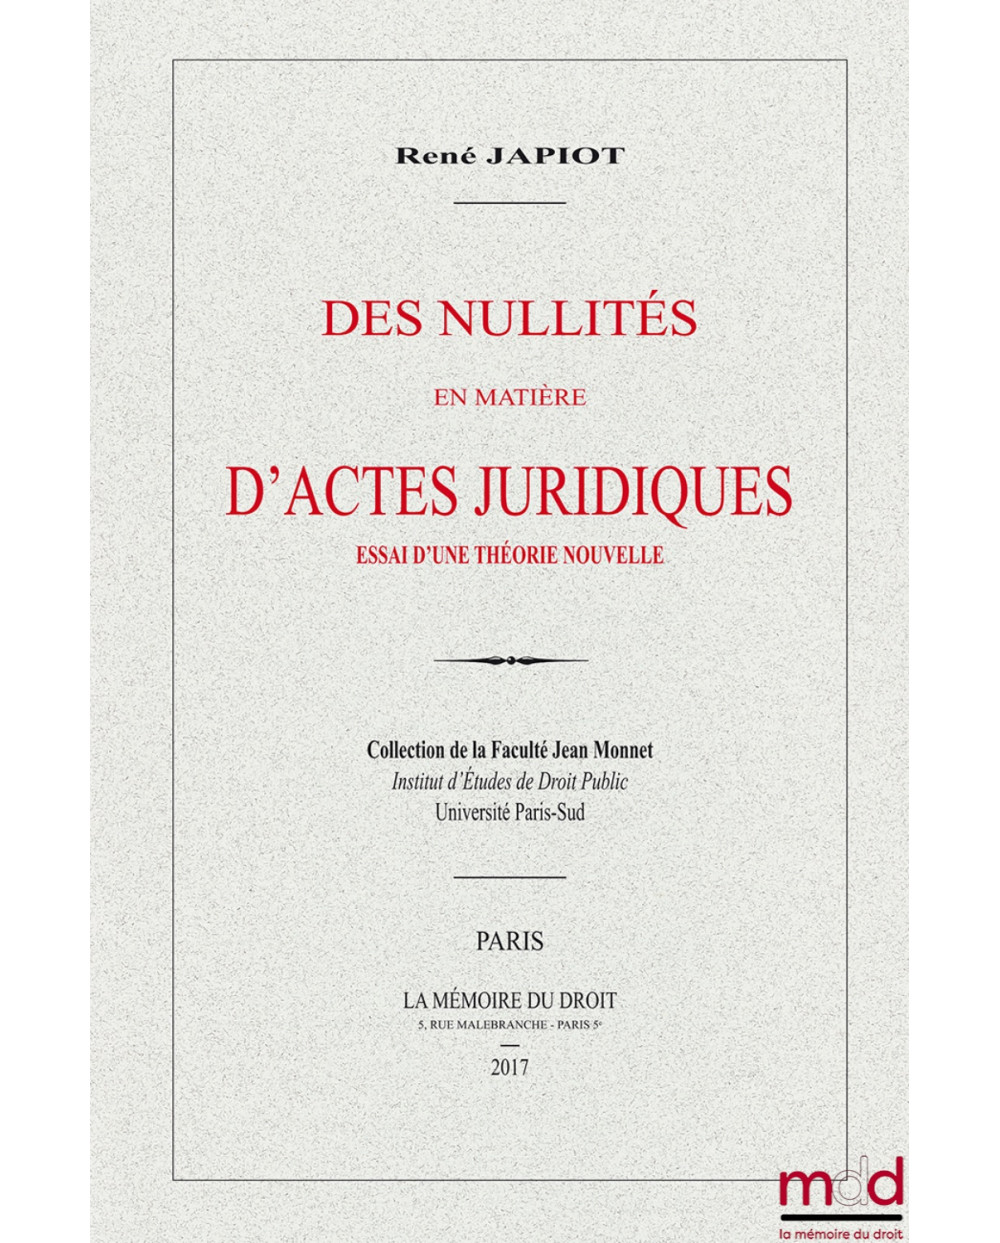 DES NULLITÉS EN MATIÈRE D’ACTES JURIDIQUES, Essai d’une théorie nouvelle (Thèse de 1909), Collection de la Faculté Jean Monnet